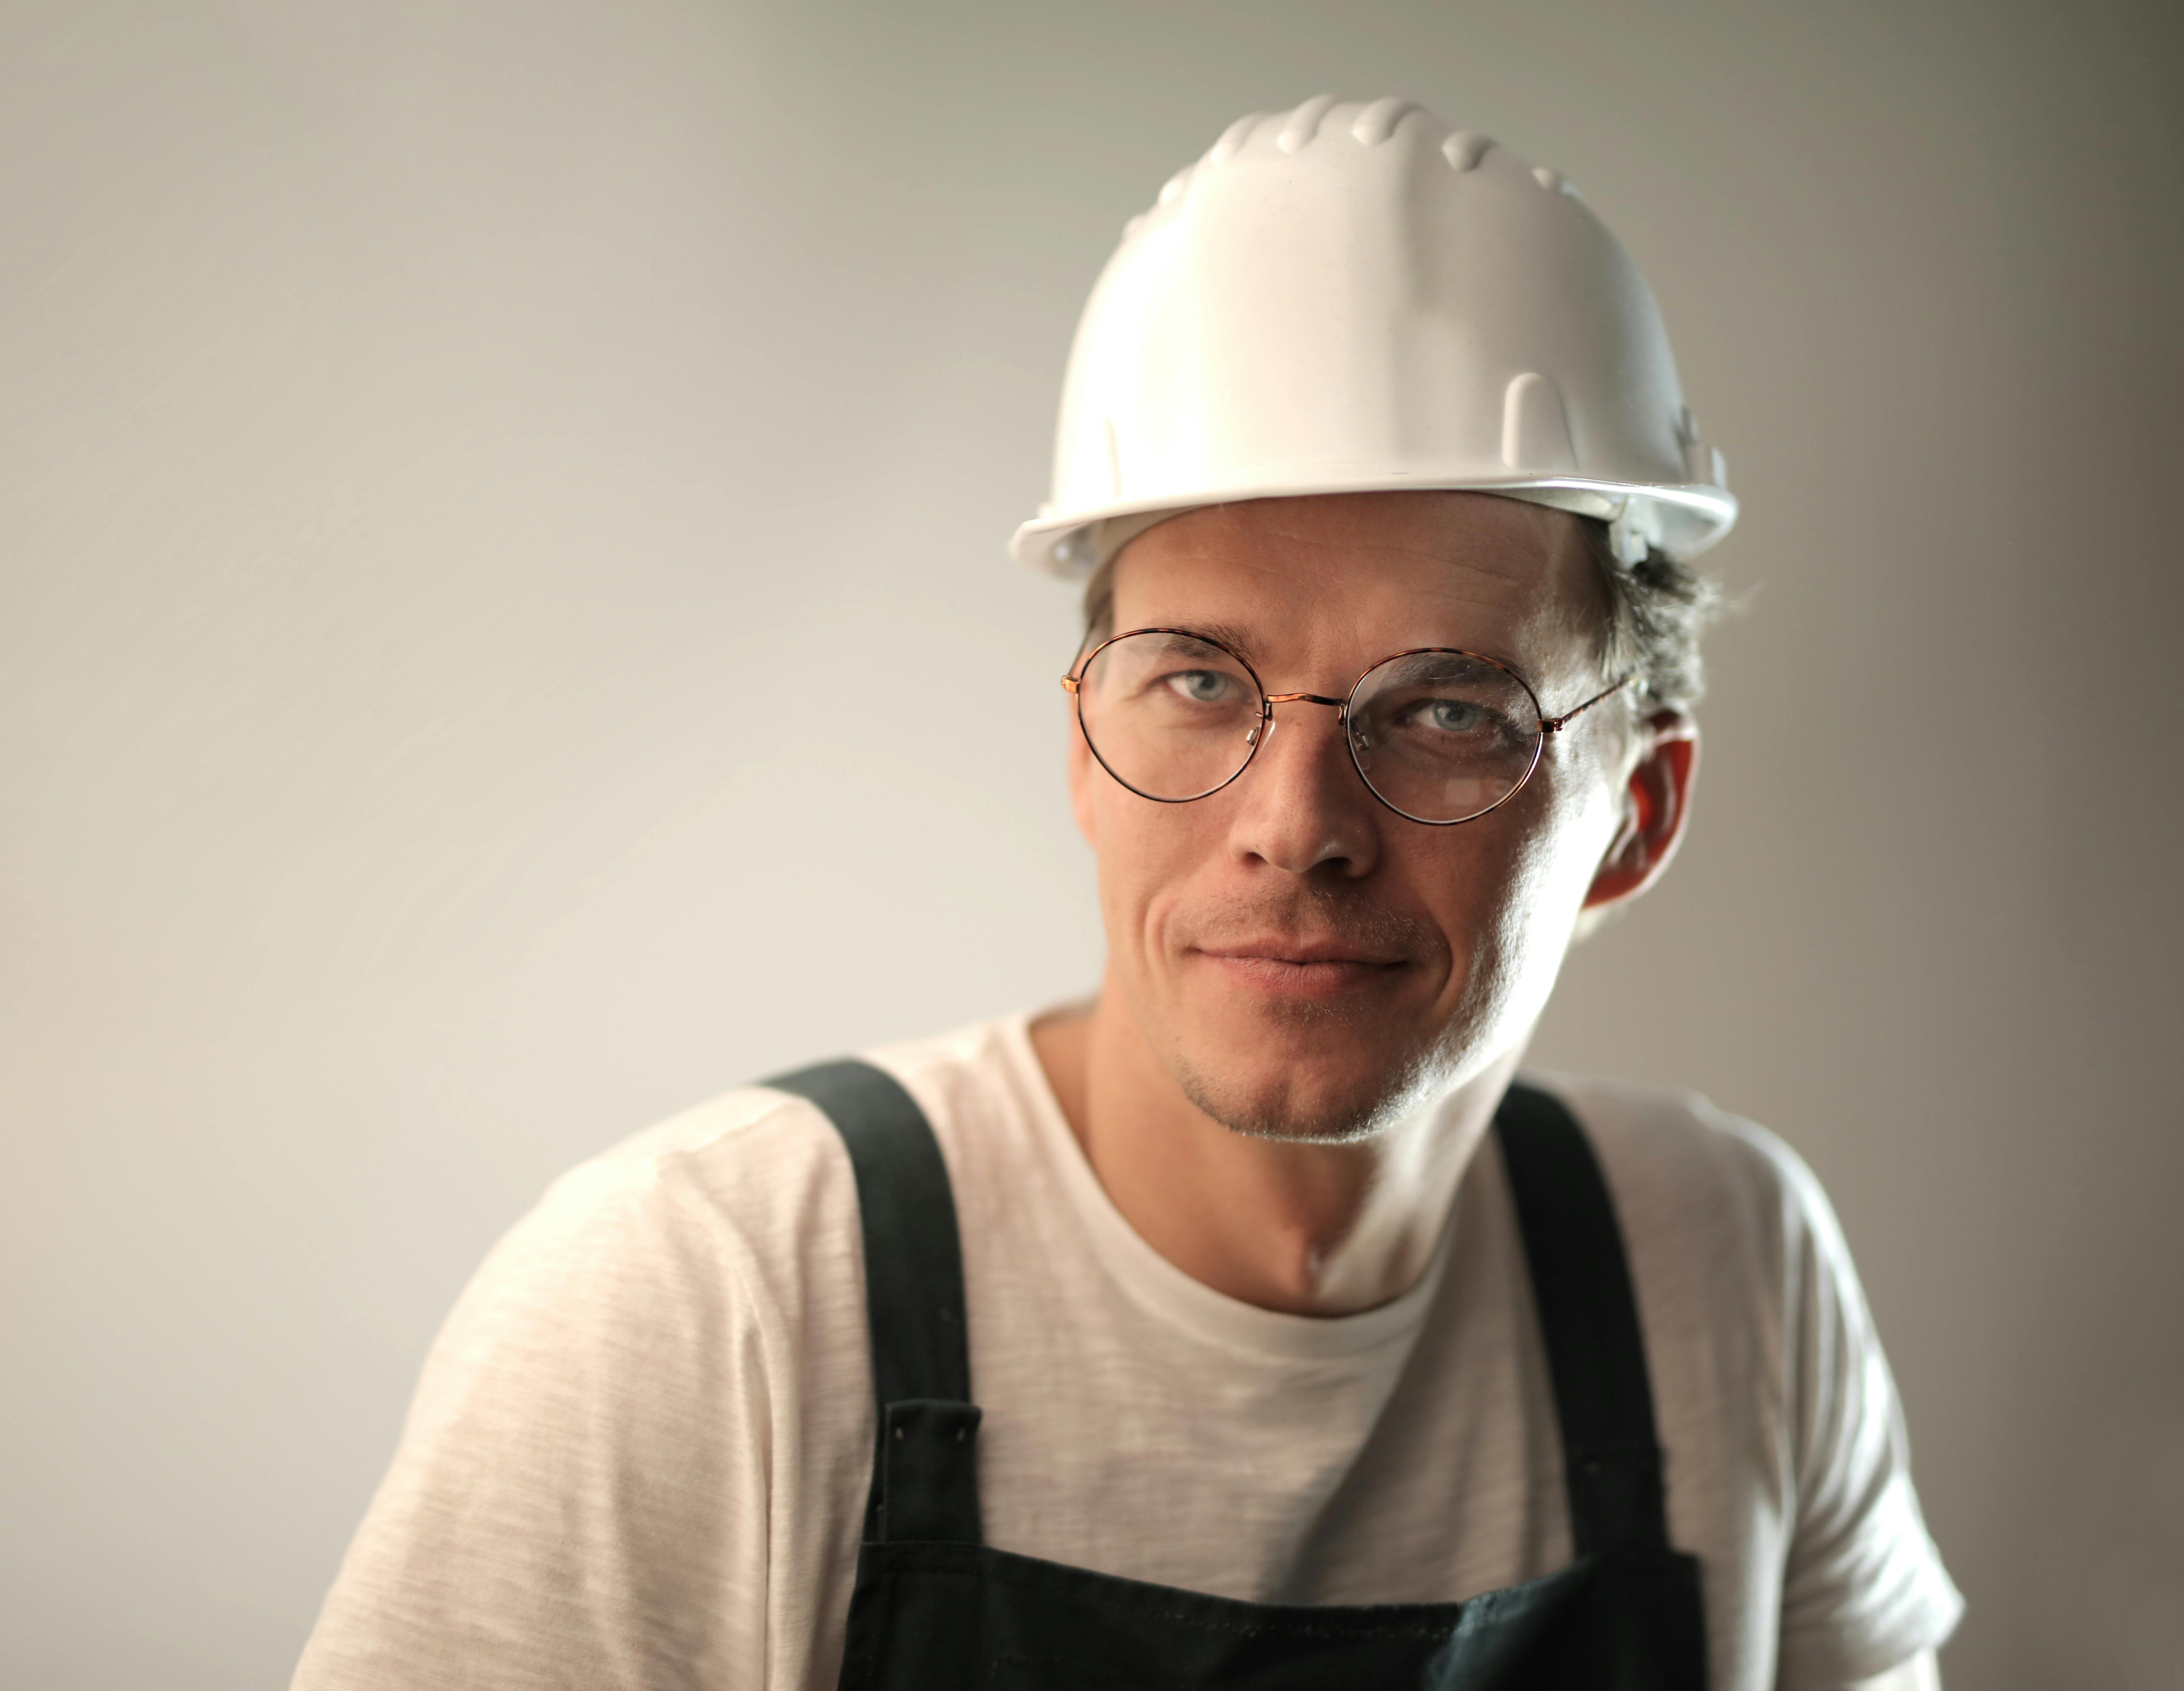 Un trabajador de la construcción | Fuente: Pexels